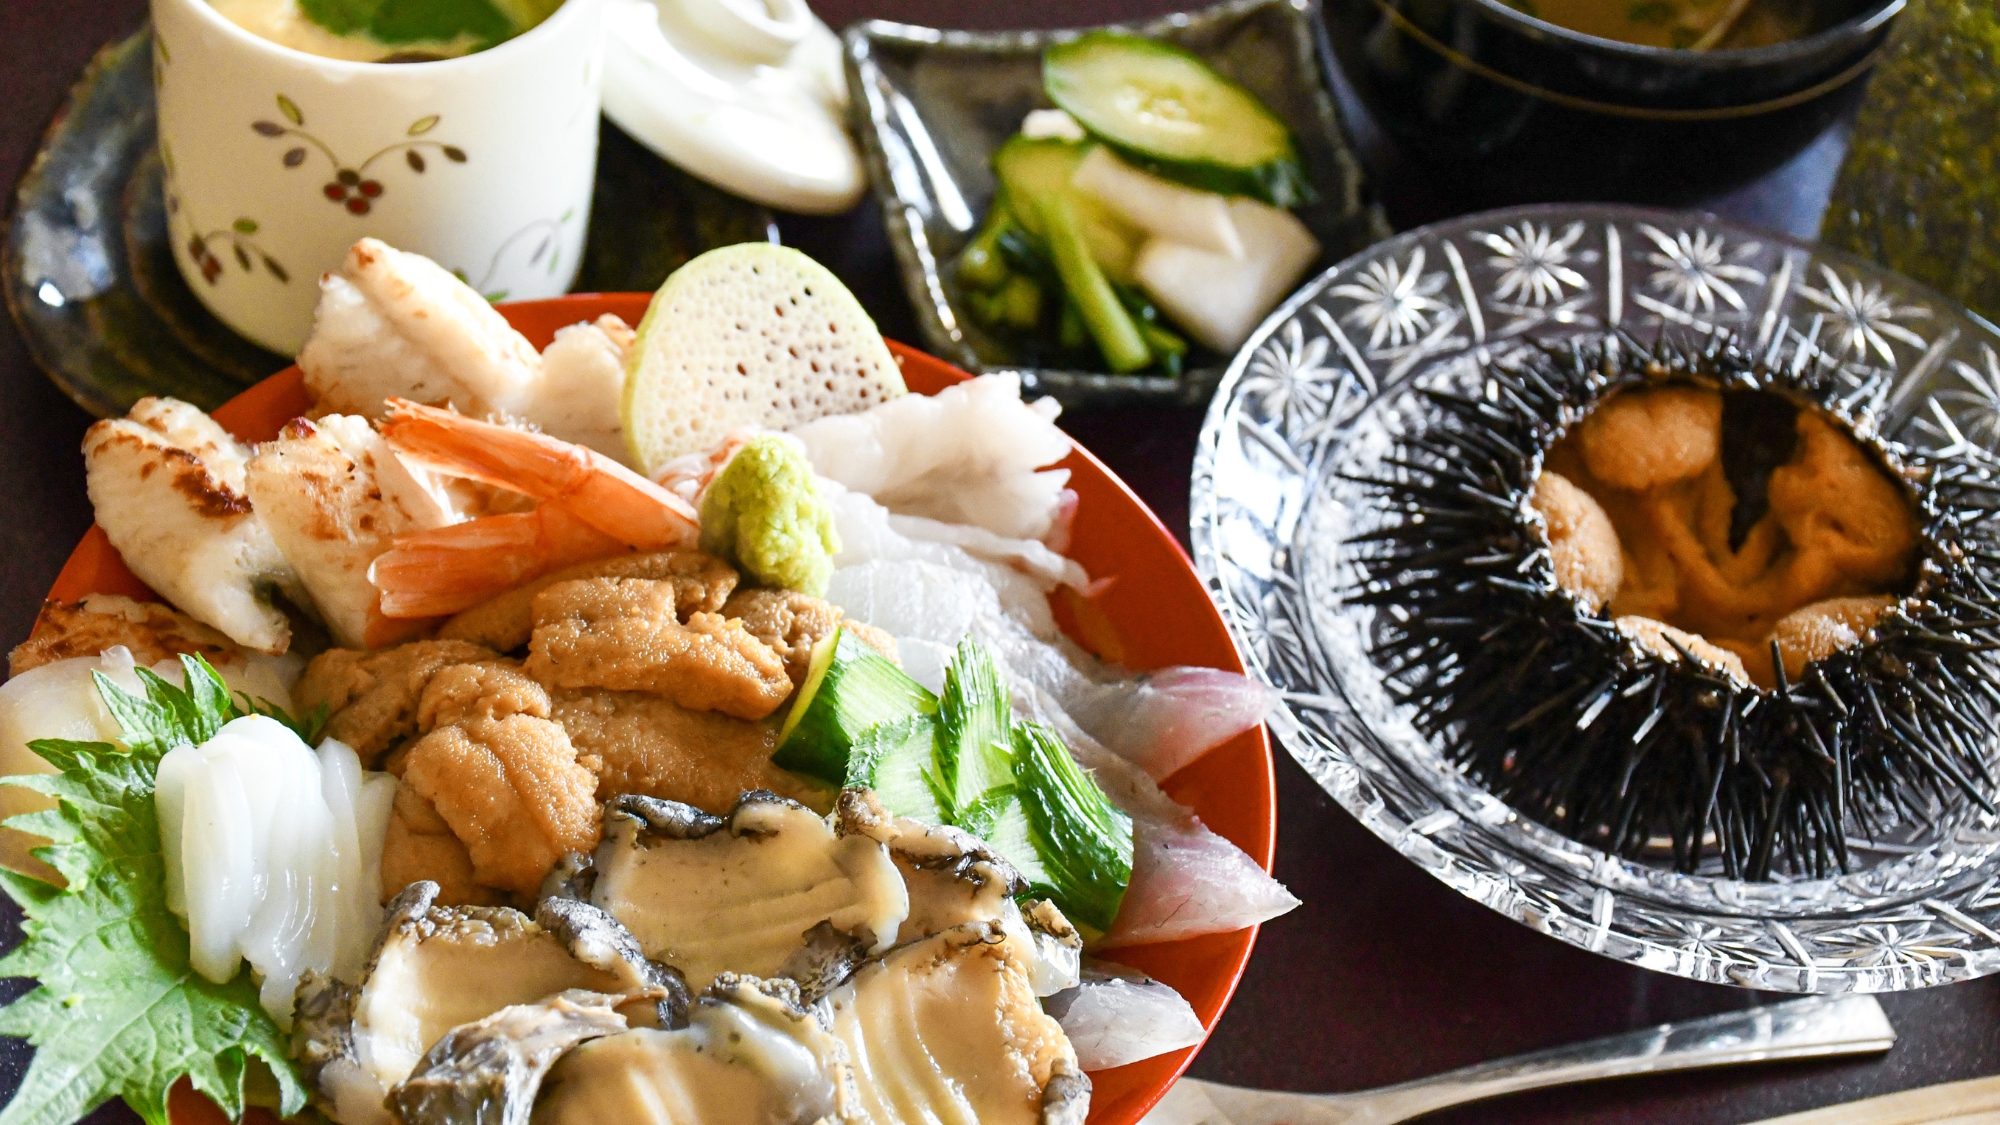 【ガゼウニと三陸極上海鮮丼】新鮮な雲丹は海鮮丼と殻付きガゼウニで贅沢にご堪能下さい。